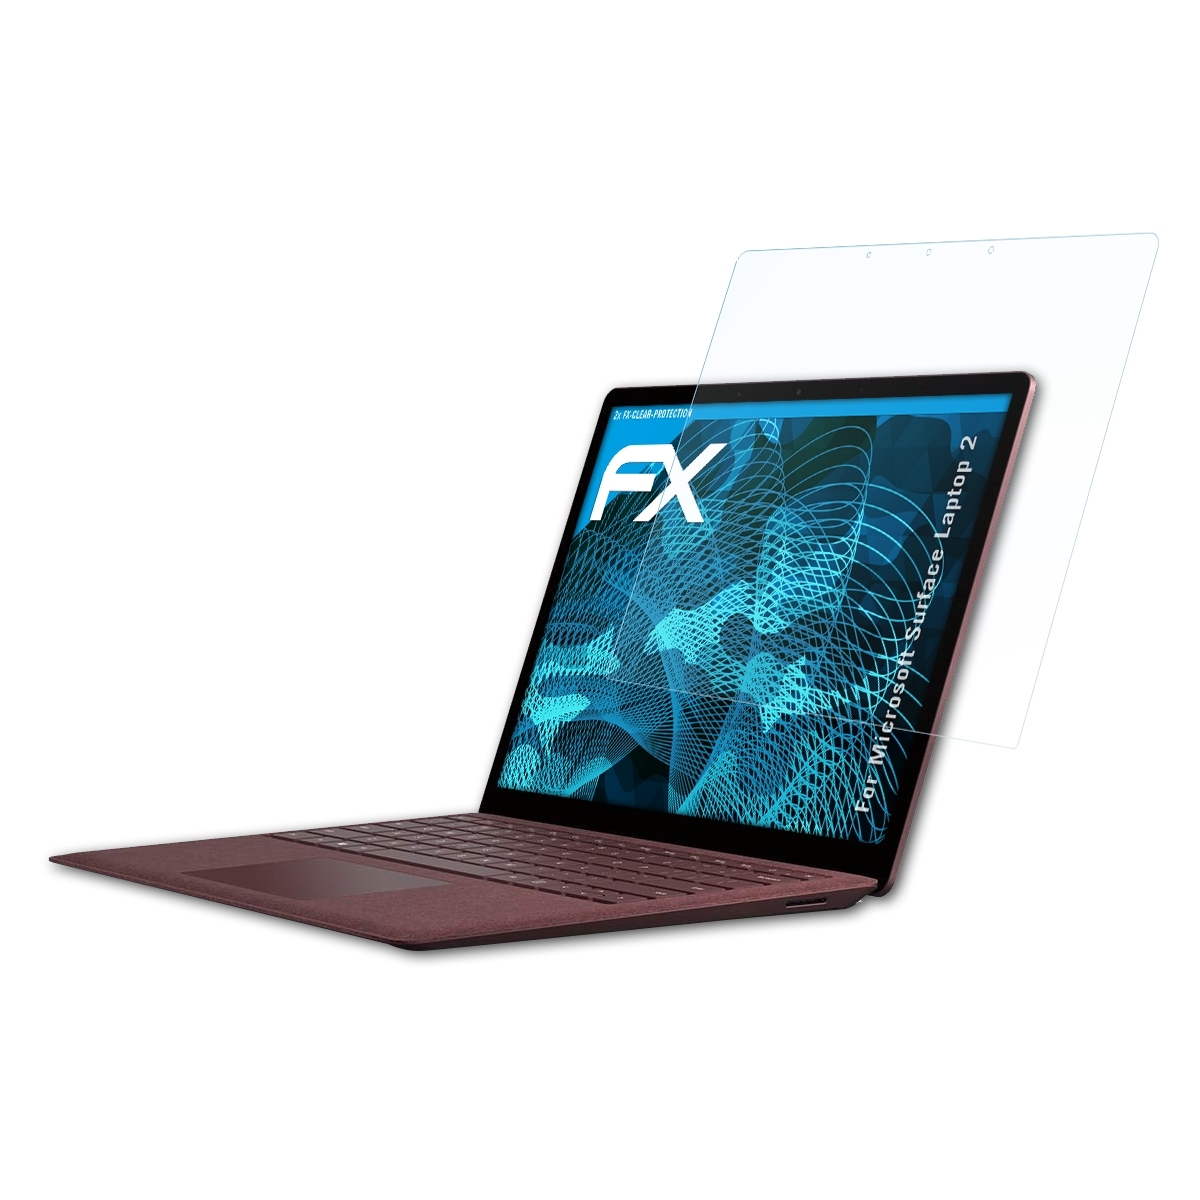 ATFOLIX 2x Displayschutz(für FX-Clear Laptop 2) Microsoft Surface